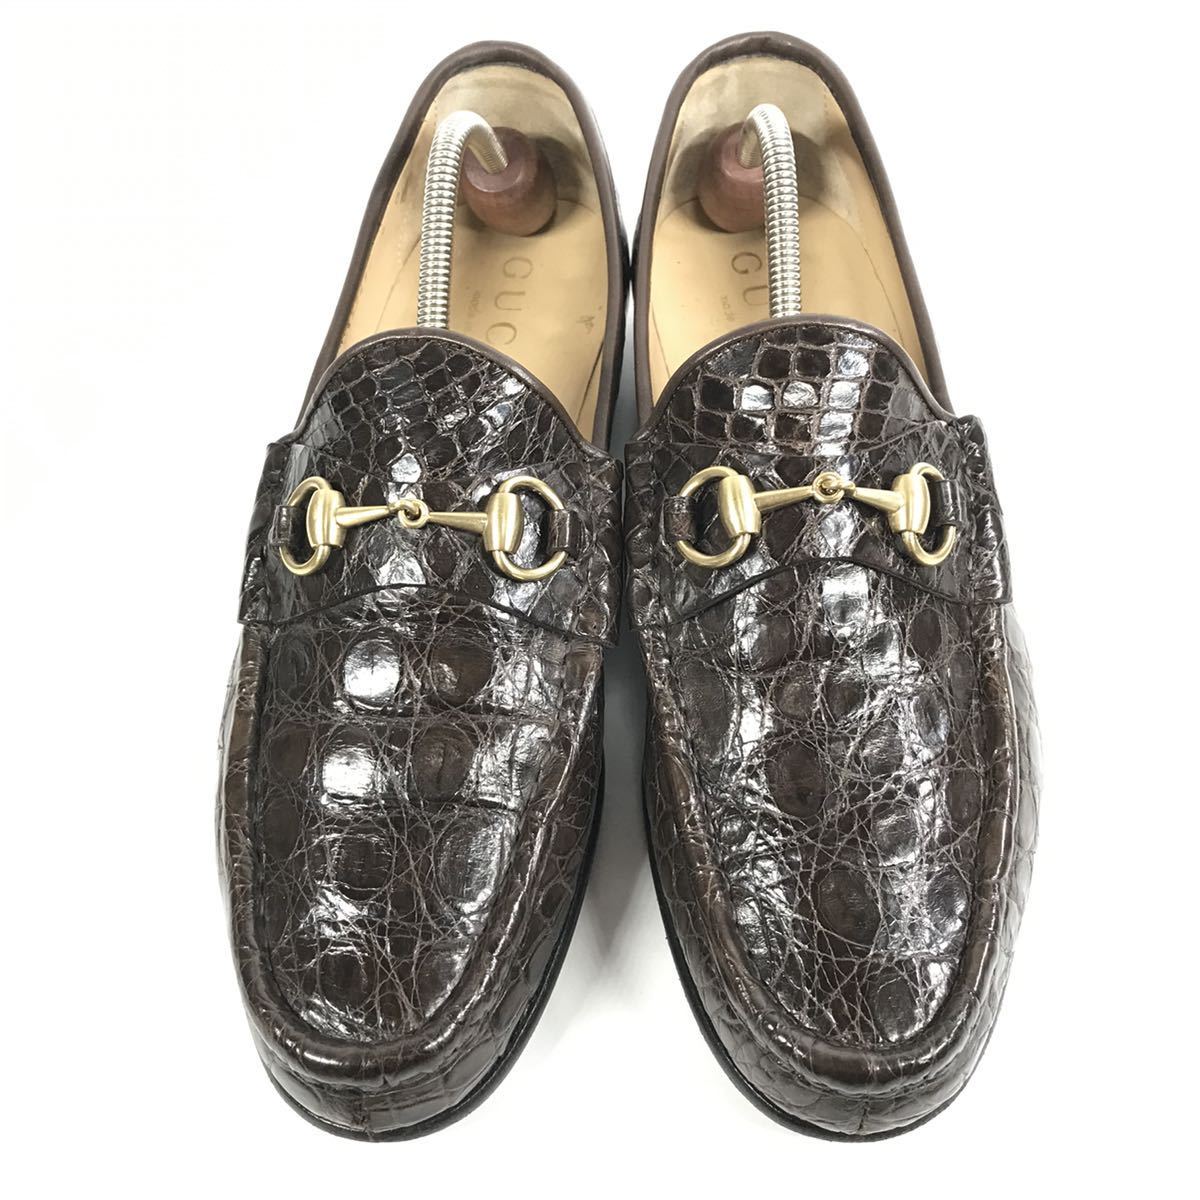 [ Gucci ] подлинный товар GUCCI обувь 28cm чай общий крокодил шланг bit bit Loafer туфли без застежки бизнес обувь wani кожа мужской сделано в Италии 9 D